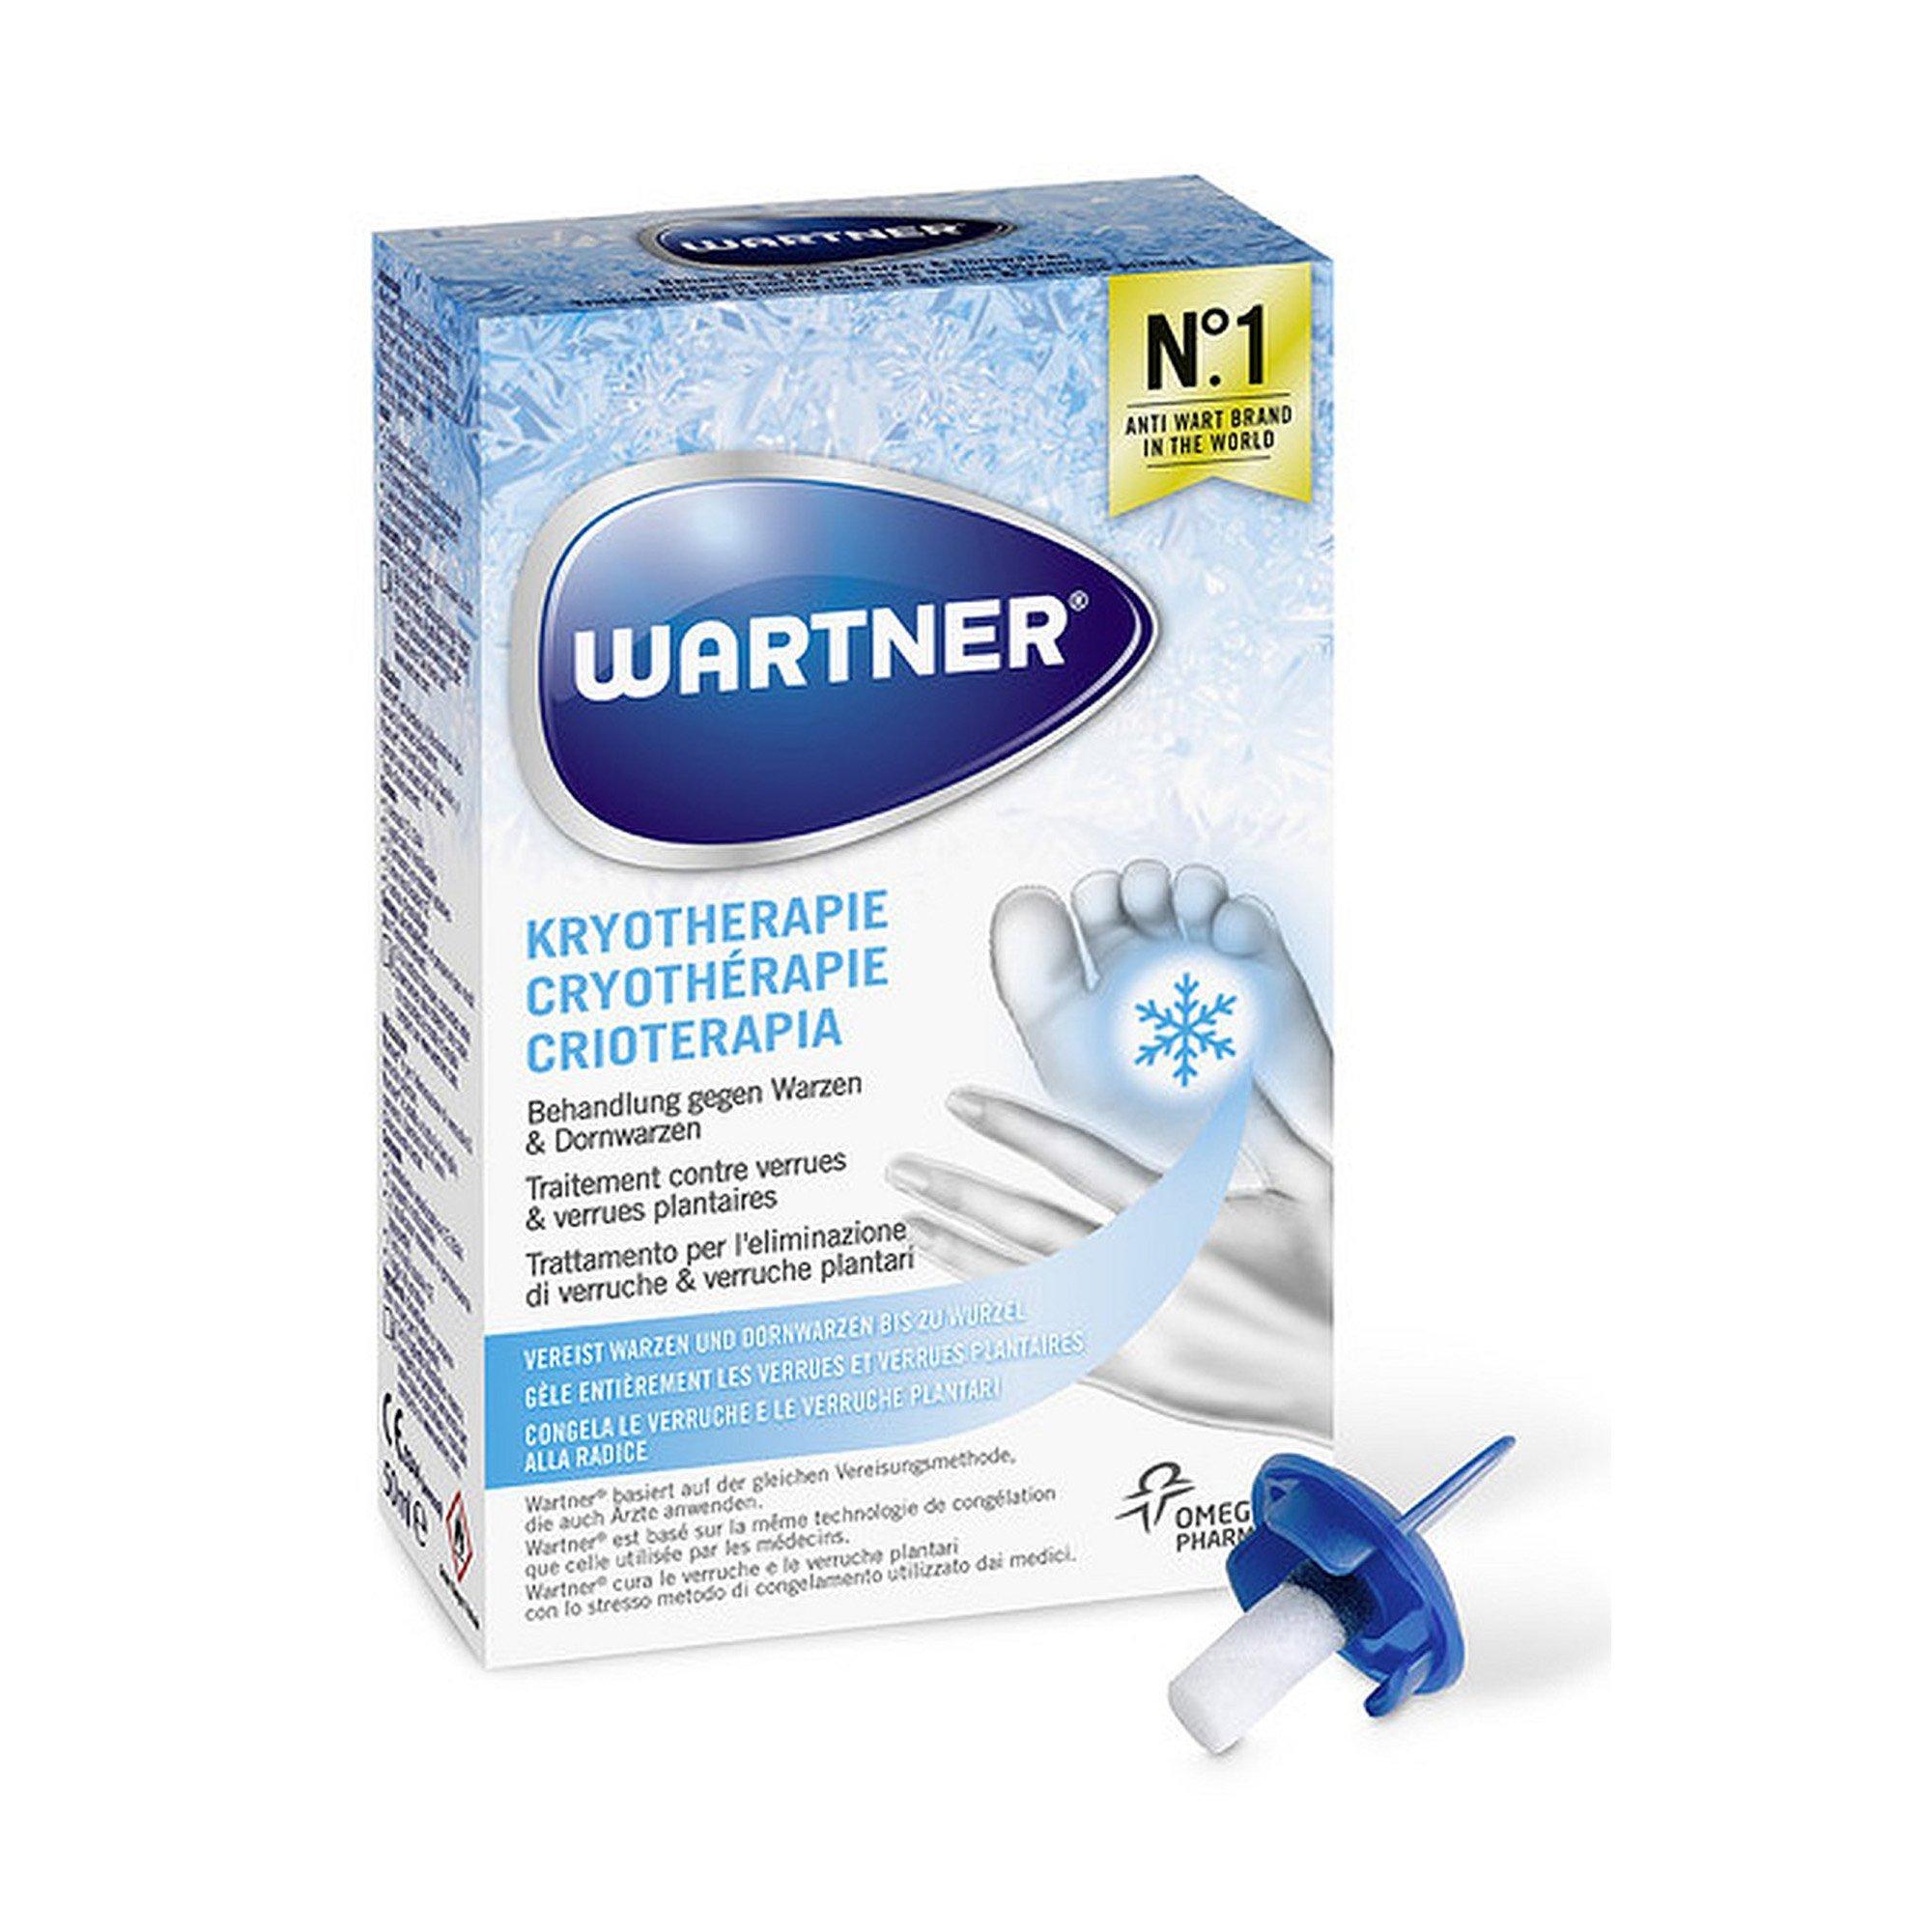 WARTNER Wartner Cryotherapie Crioterapia Verruche & Verruche plantari 